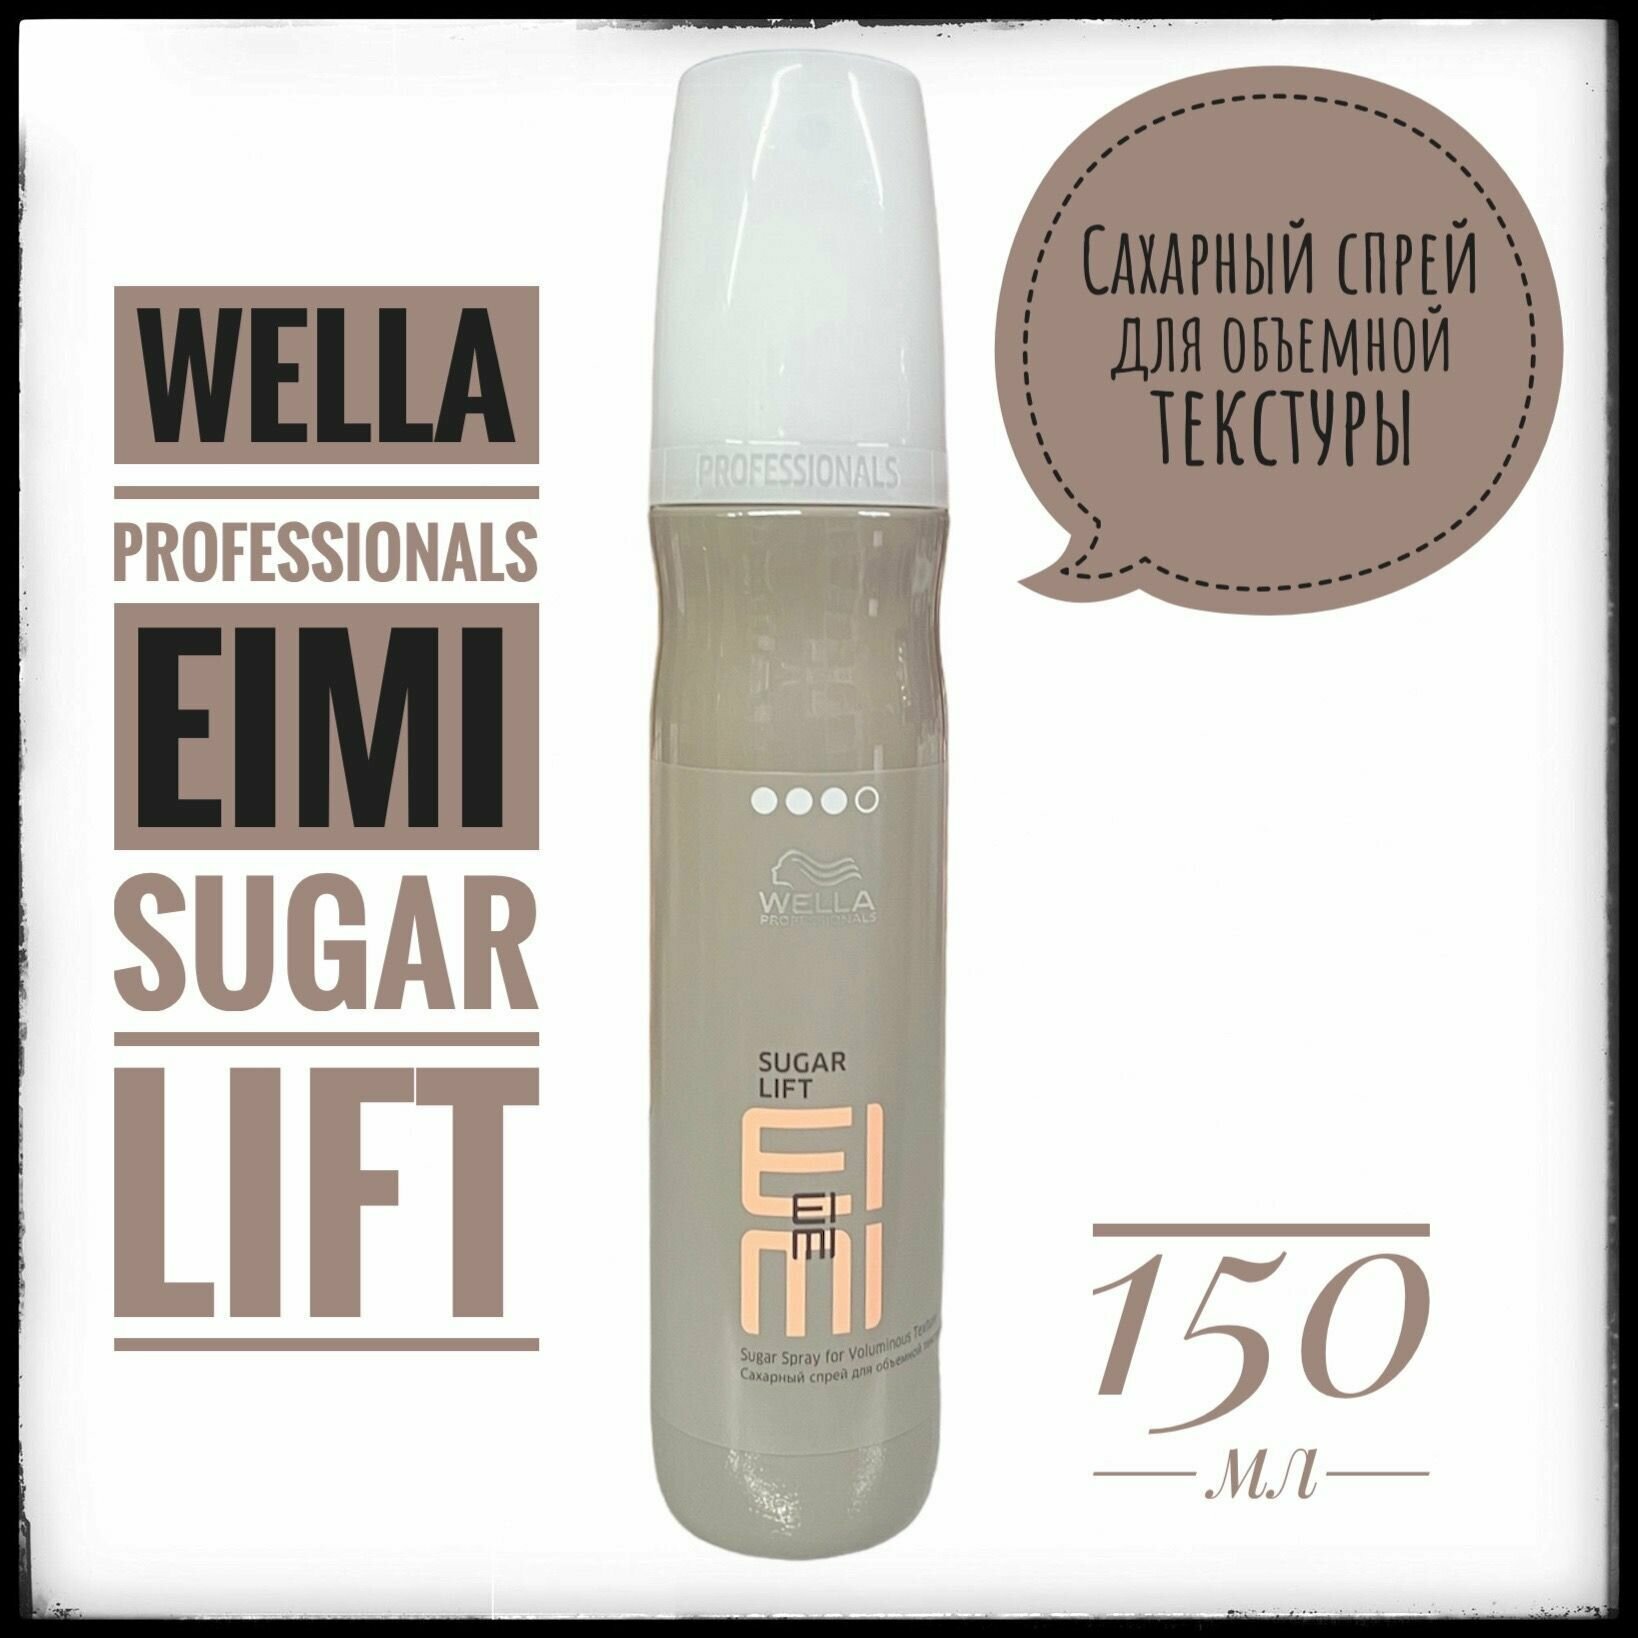 Wella Professionals EIMI Sugar Lift Сахарный спрей для объемной текстуры 150 мл